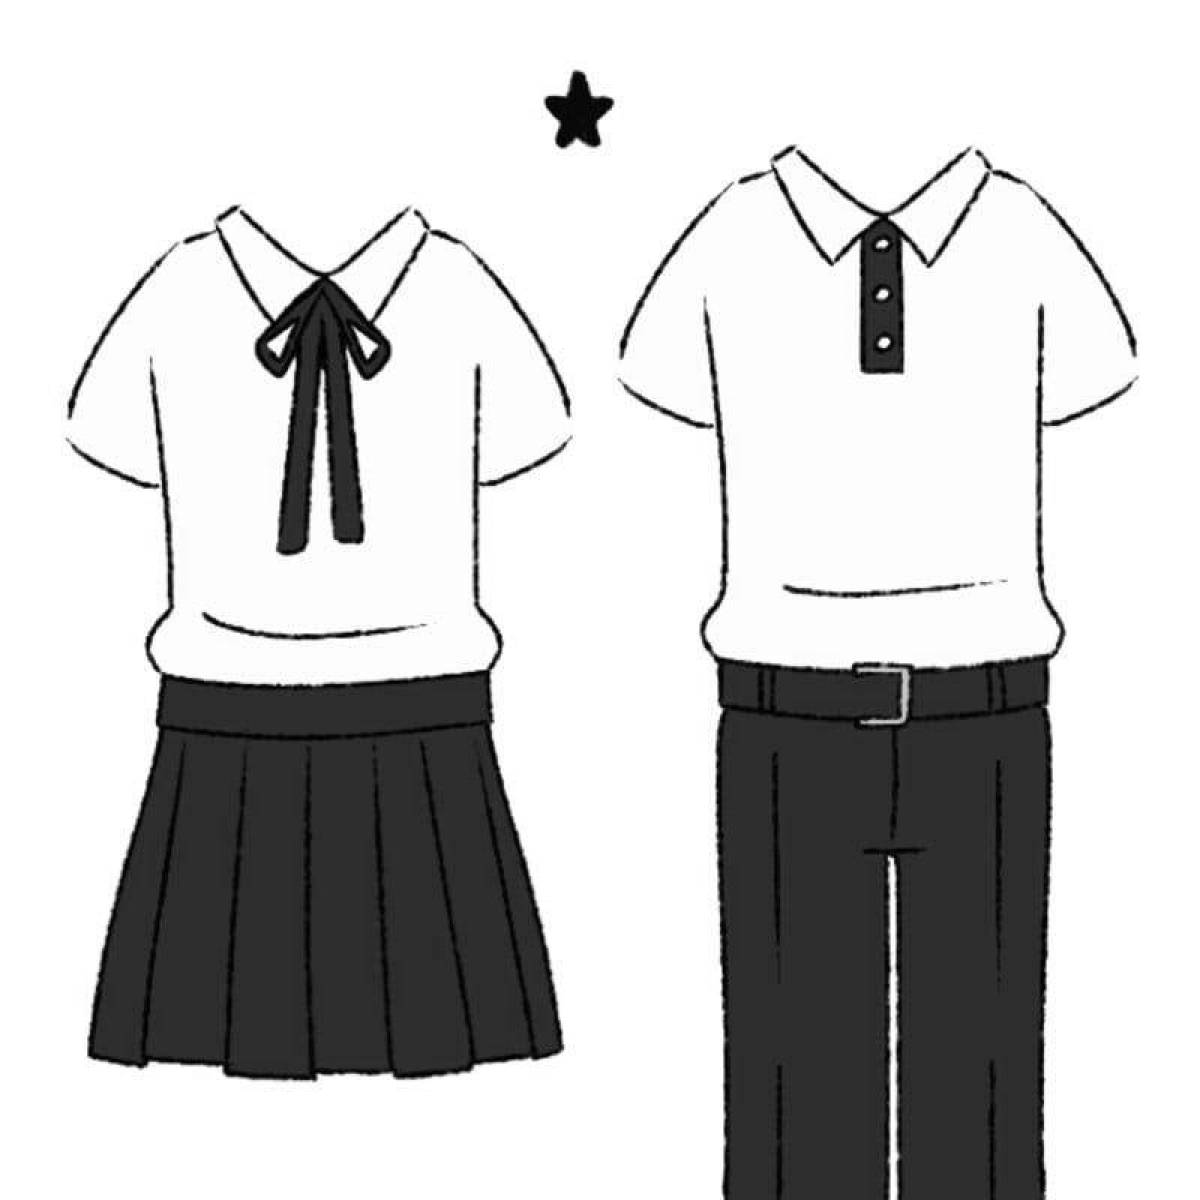 Coloring page energetic school uniform